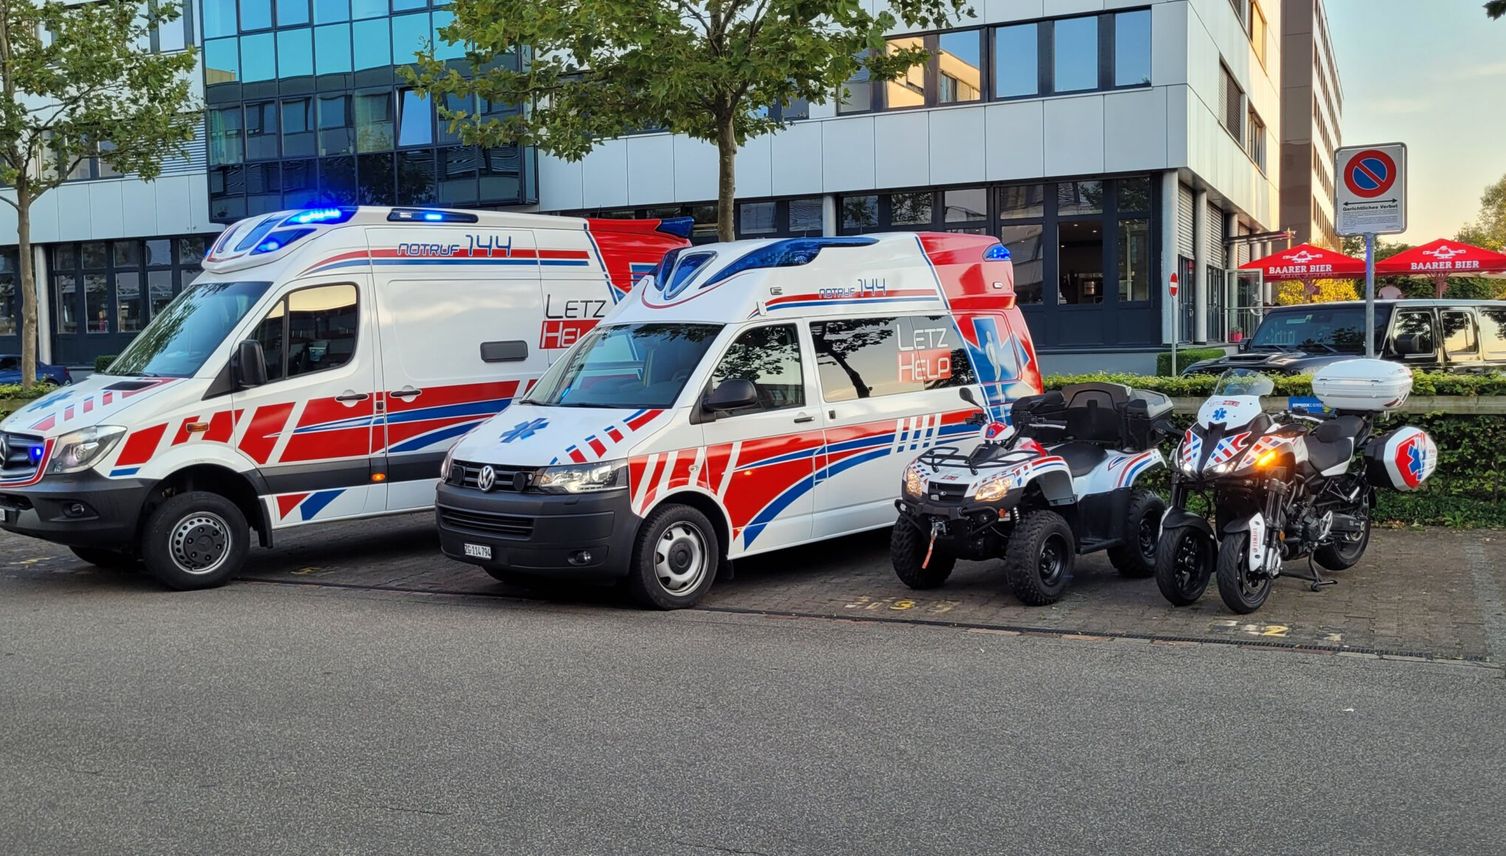 Zürcher Notrufzentrale bietet in Zug private Ambulanz auf